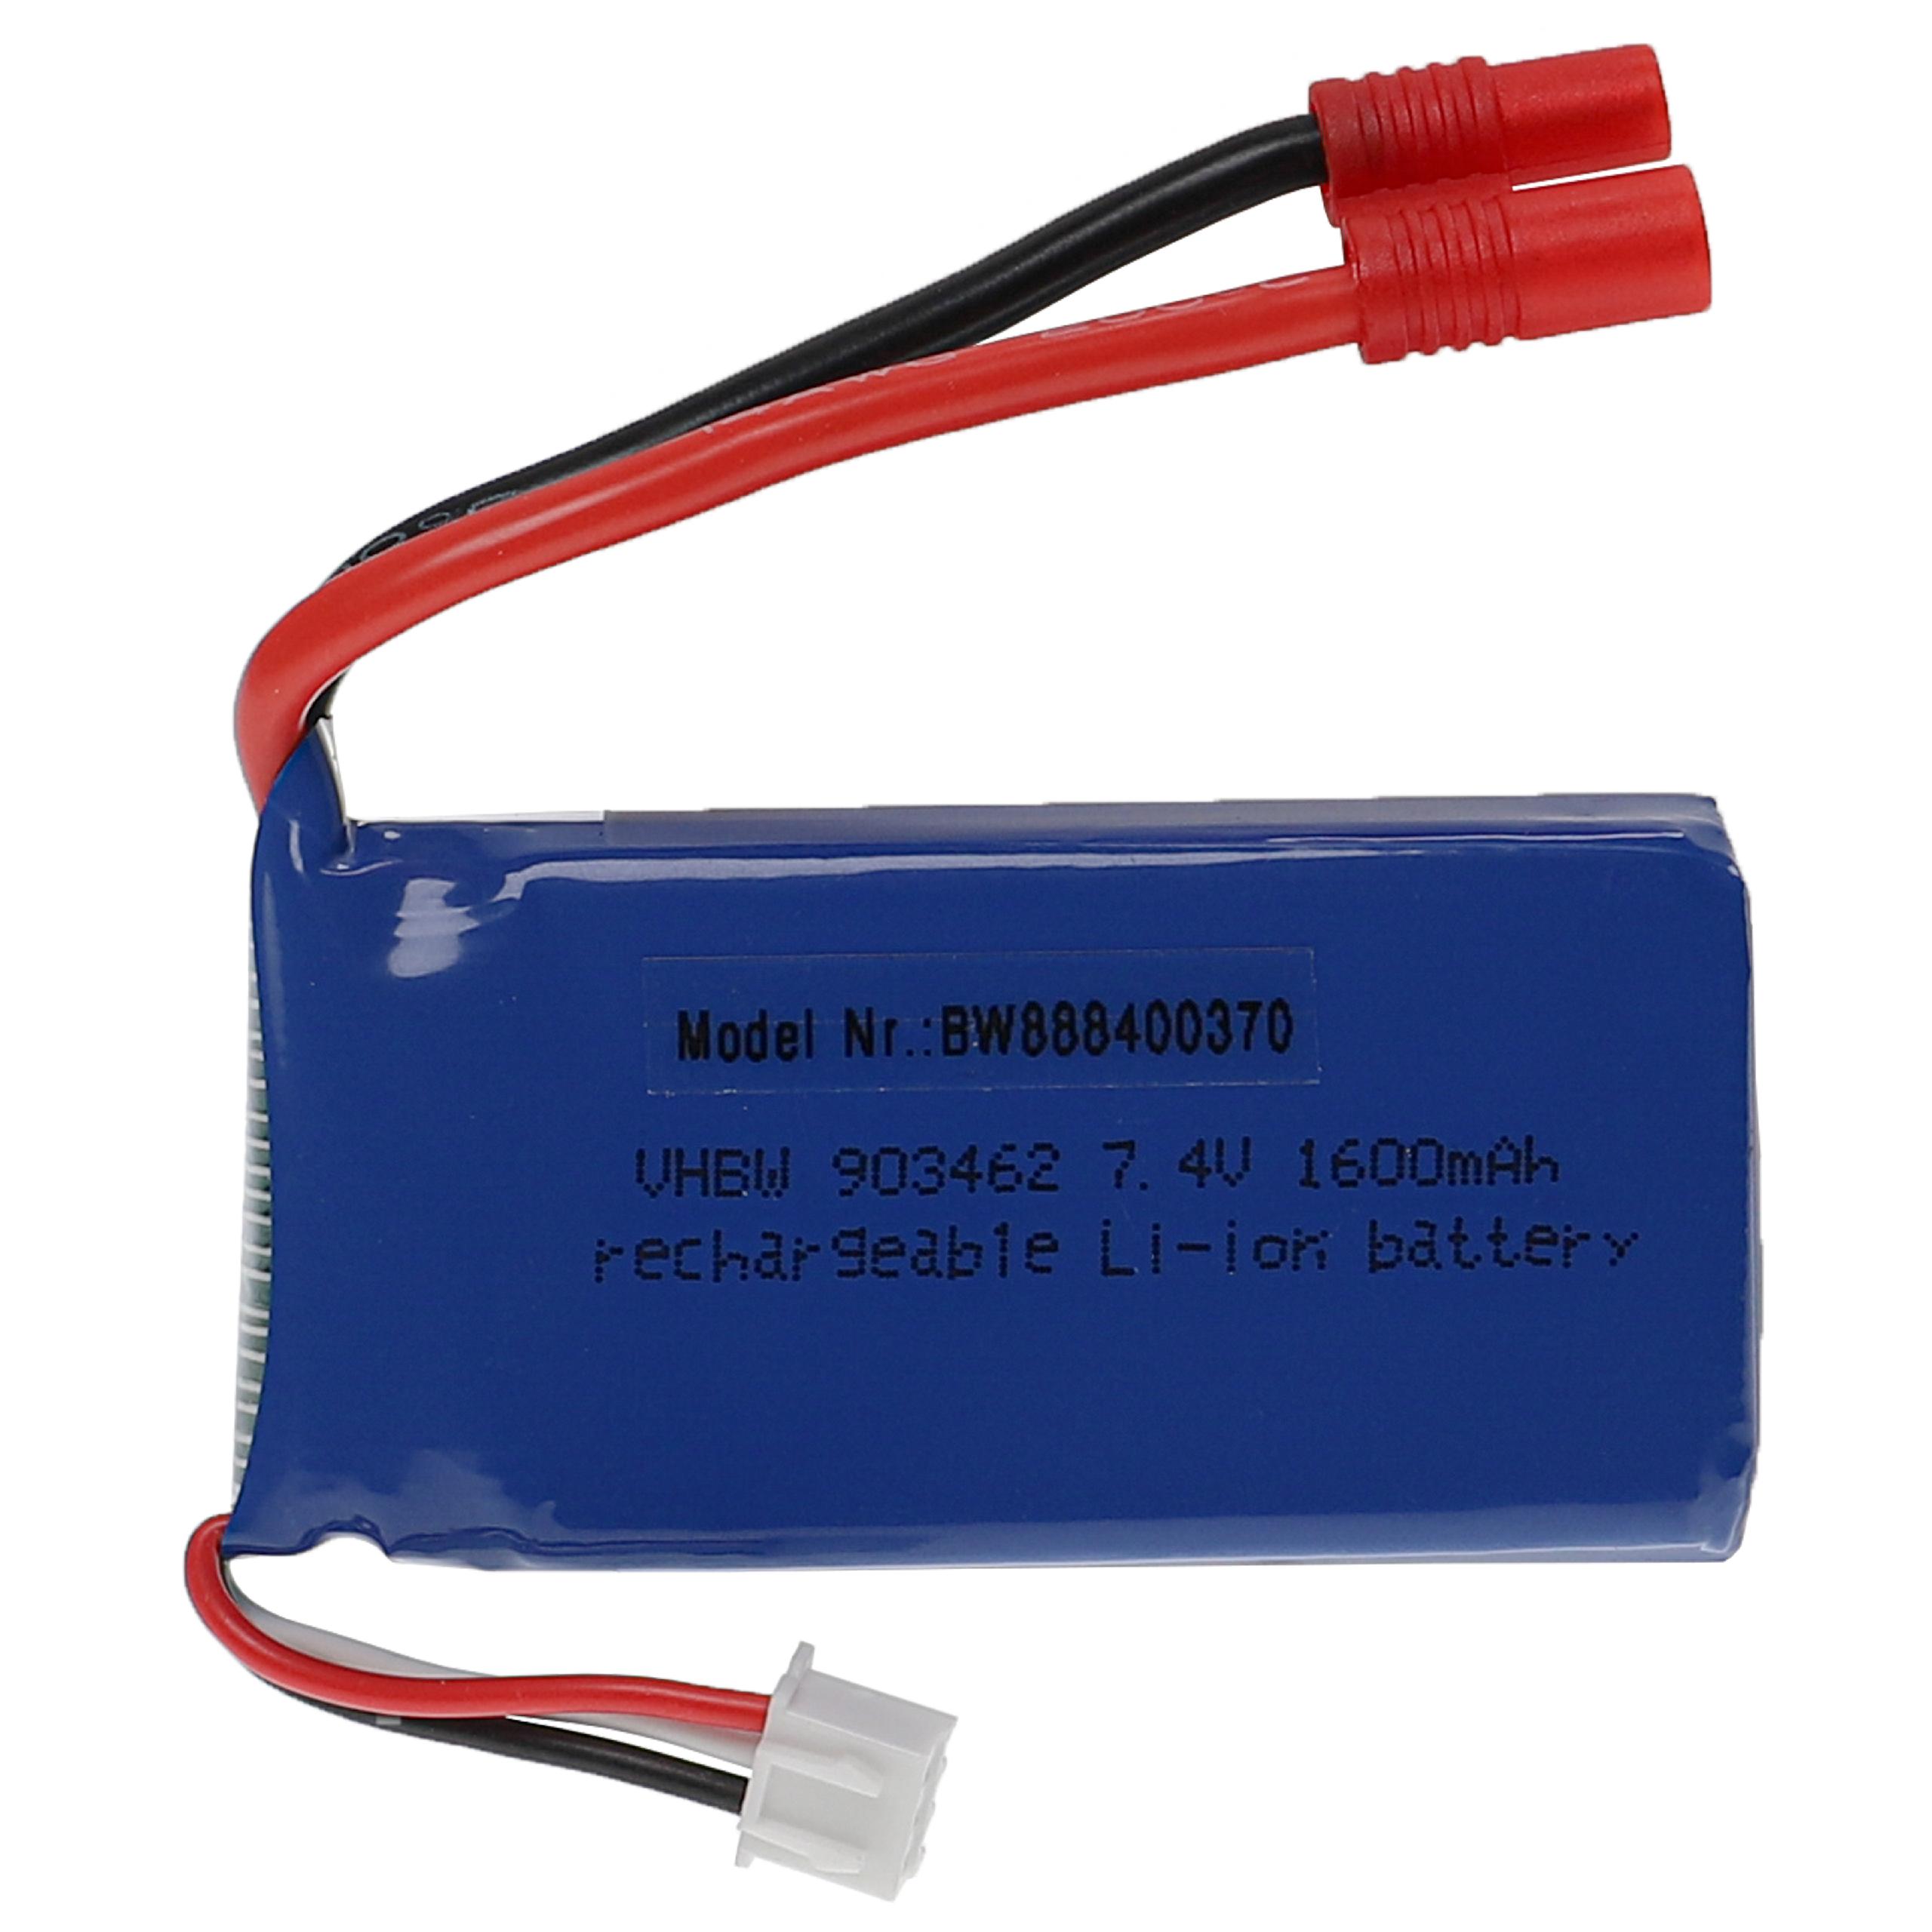 Batterie pour modèle radio-télécommandé - 1600mAh 7,4V Li-polymère, connecteur banane 3,5 mm